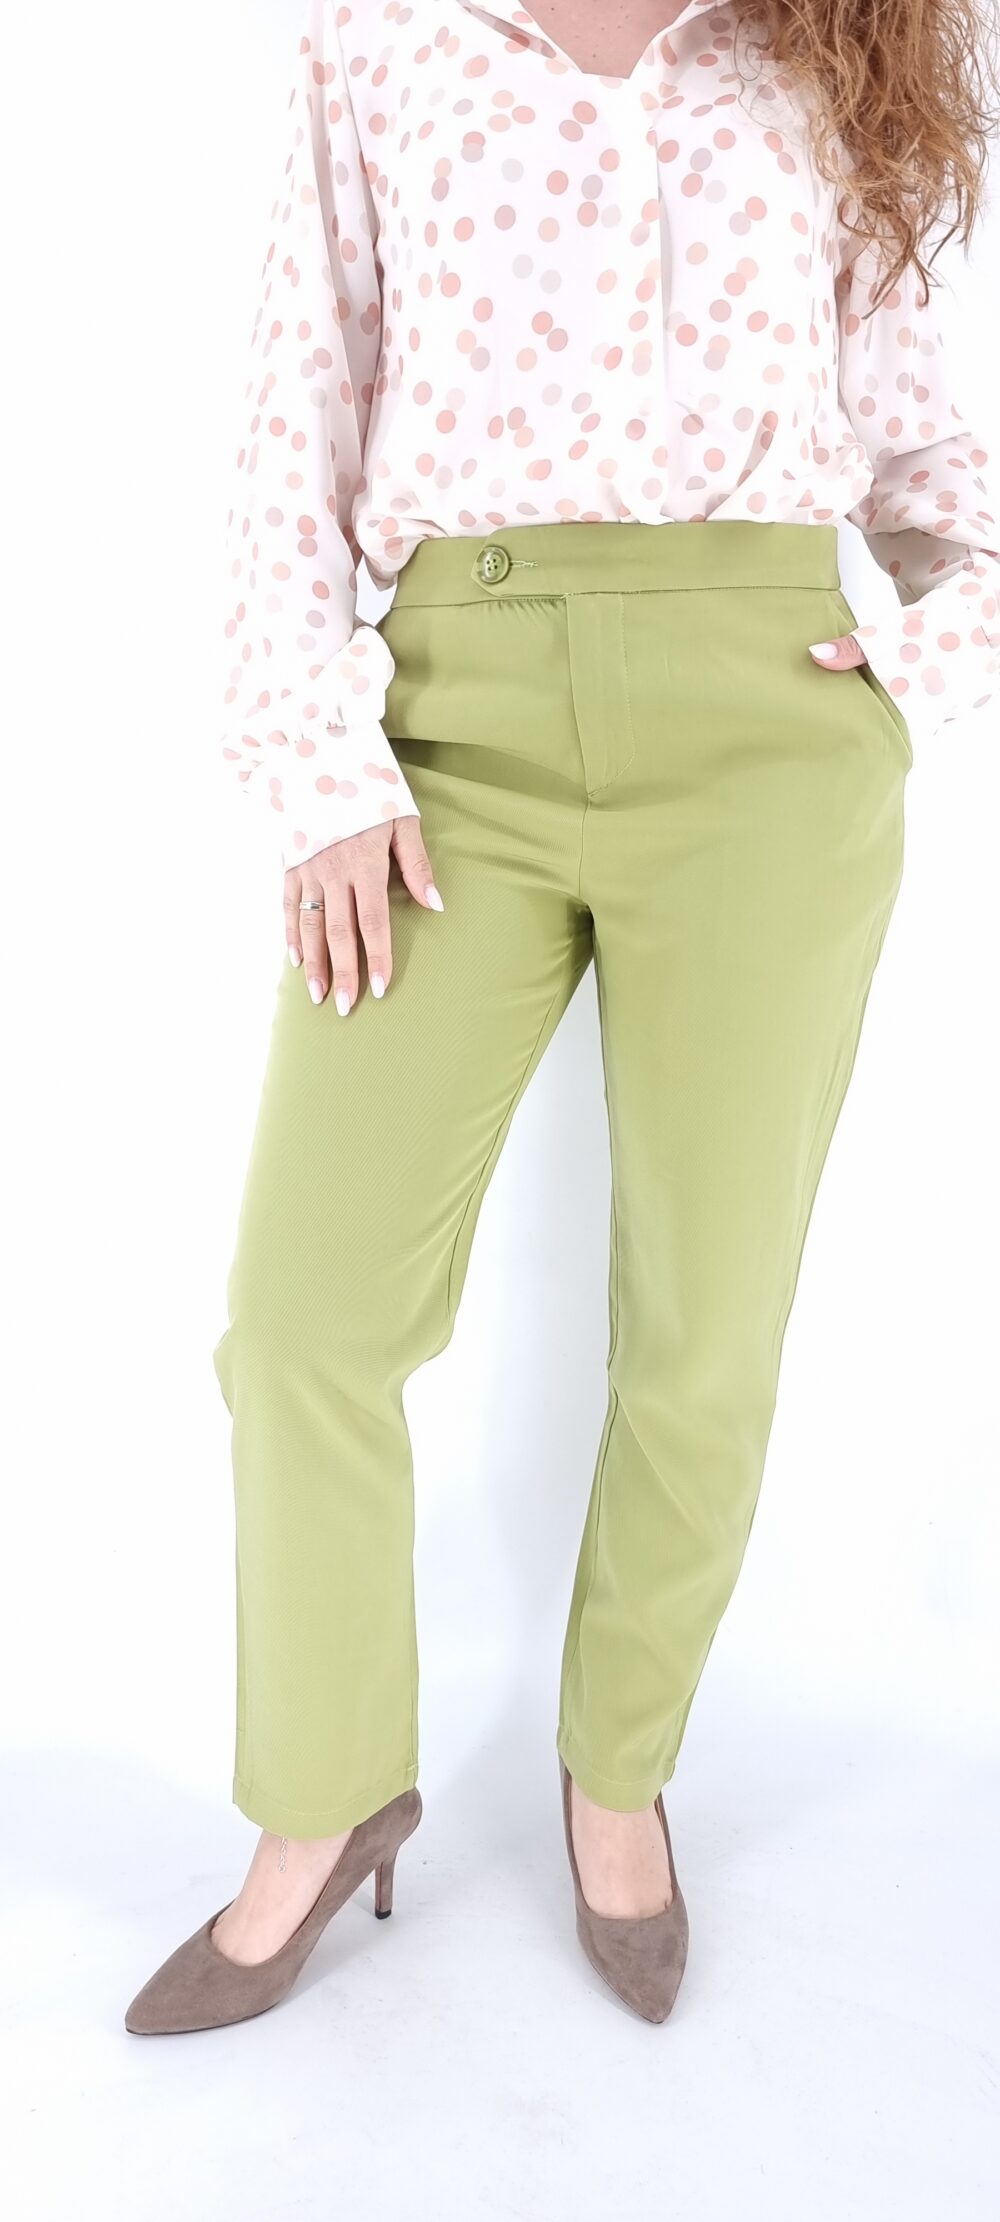 Σετ κουστούμι με σακάκι μακρύ και υφασμάτινο παντελόνι πράσινο